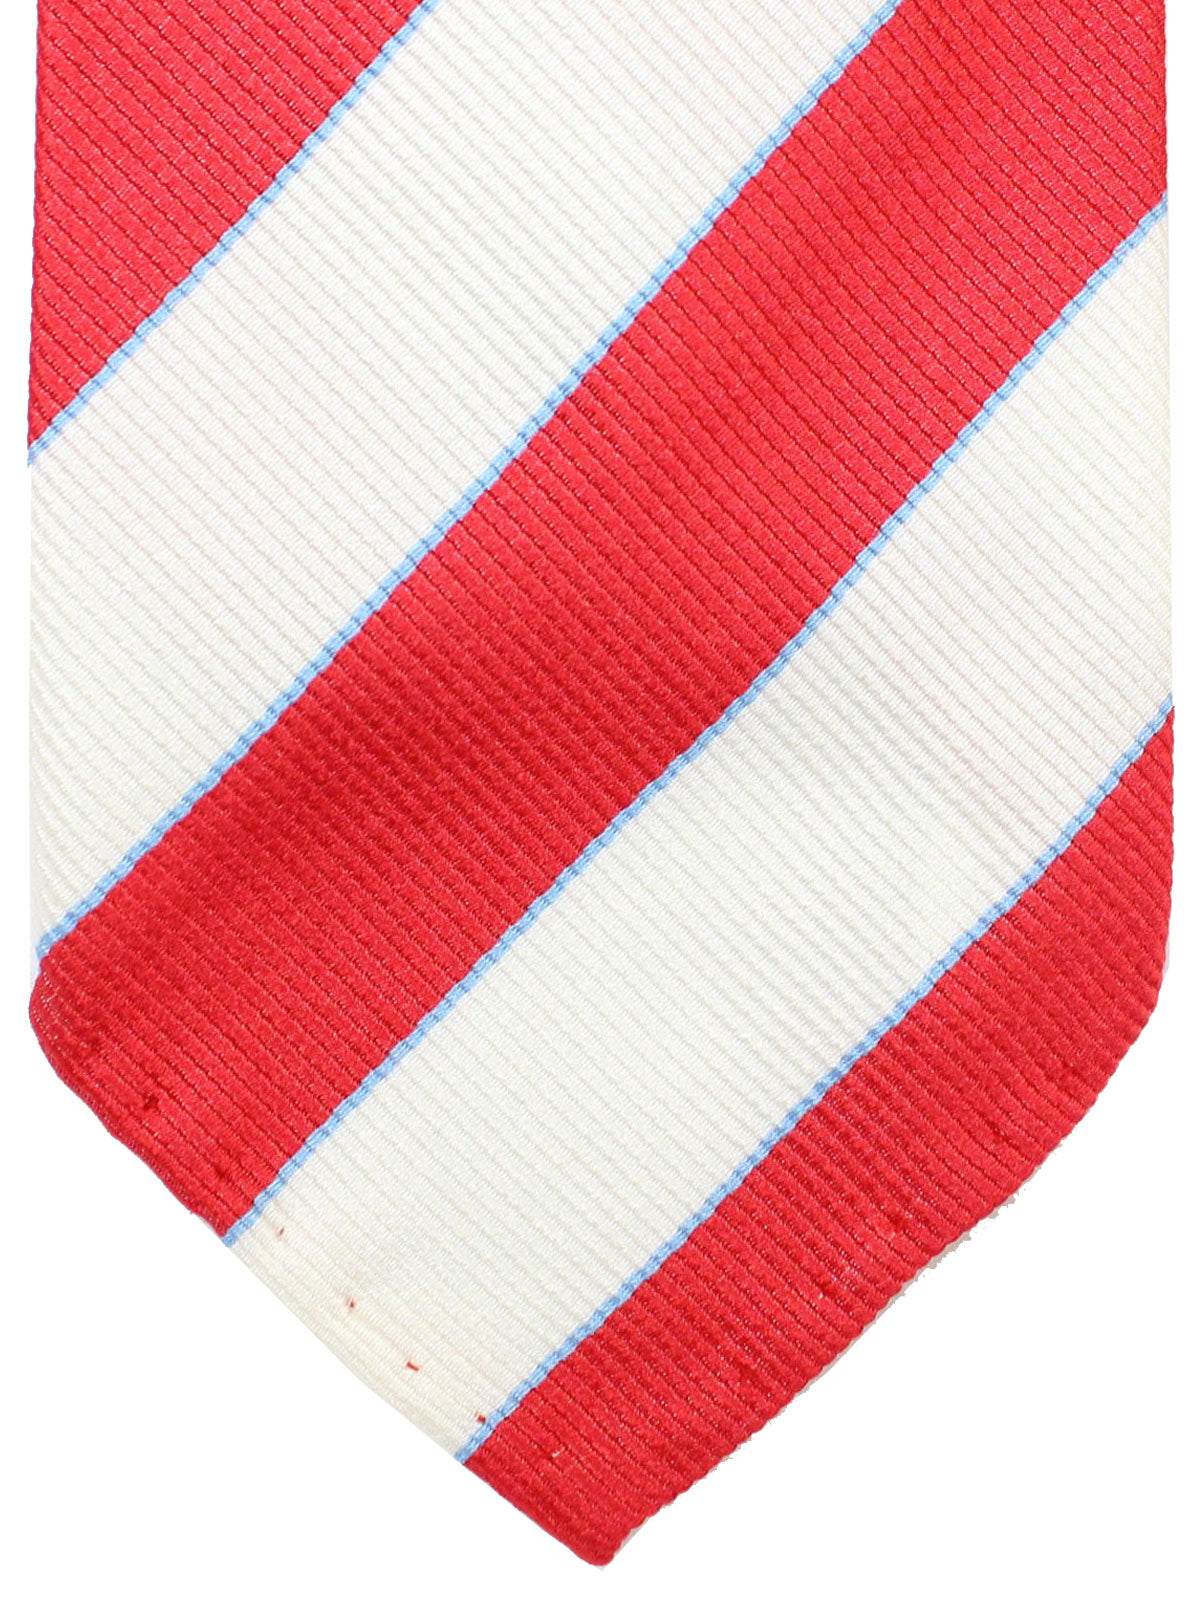 Cesare Attolini Unlined Tie White Red Blue Stripes